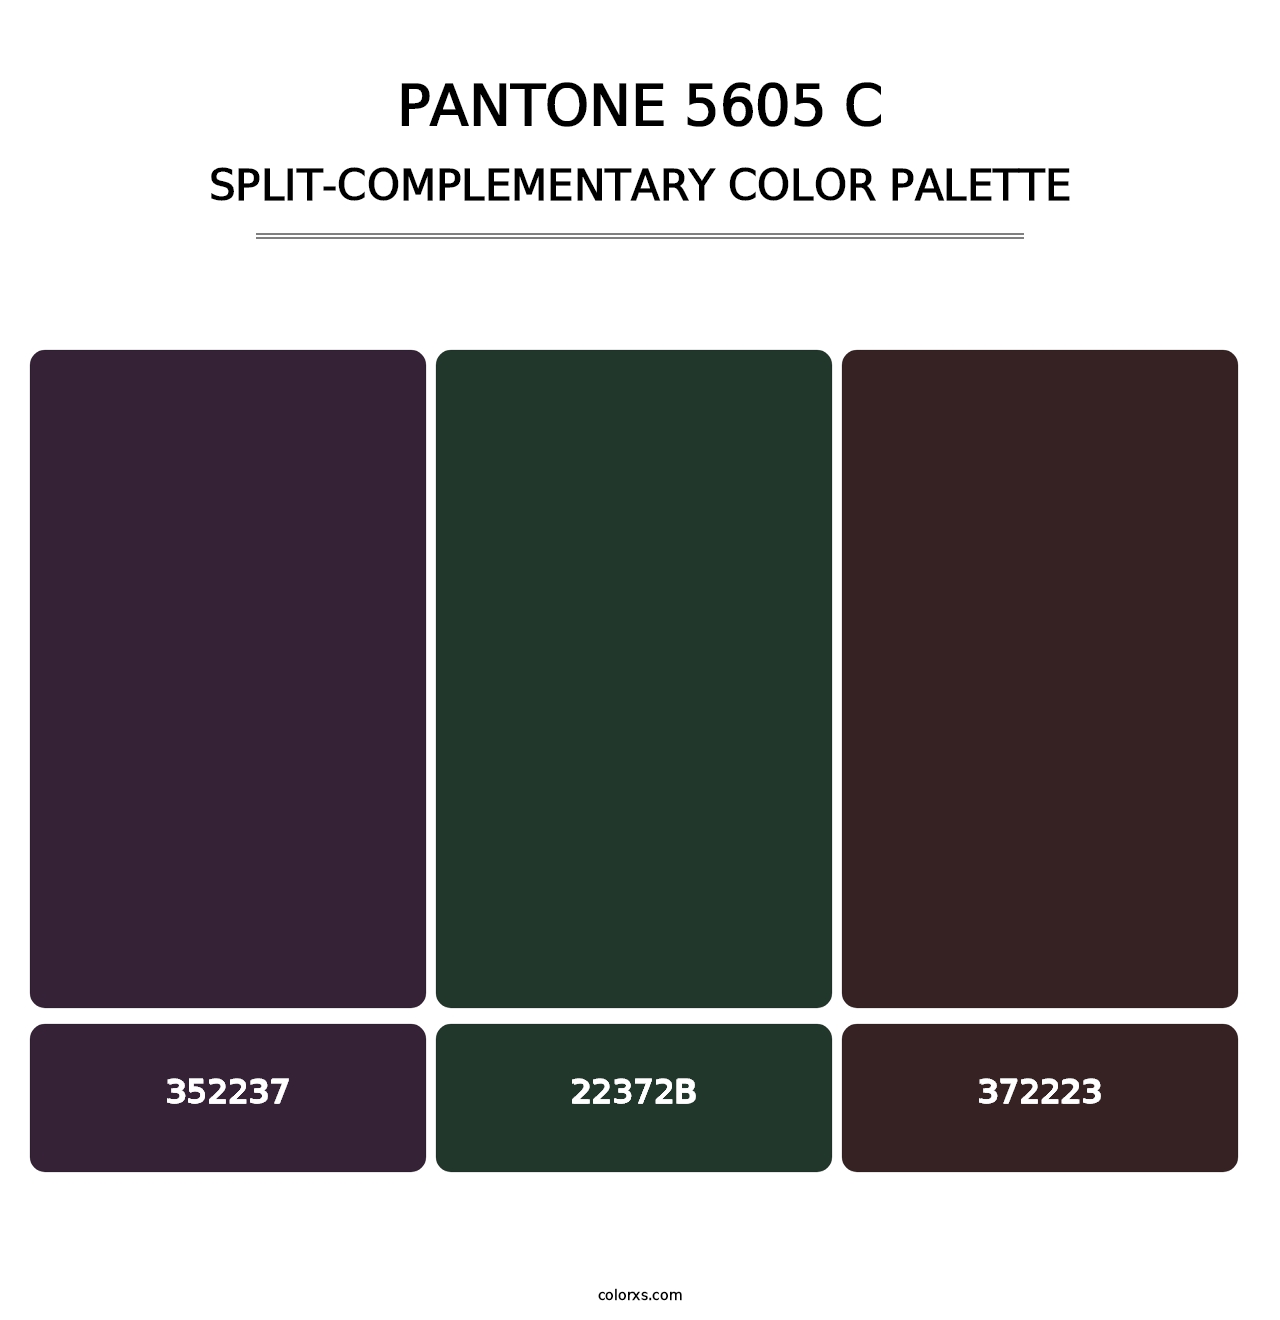 PANTONE 5605 C - Split-Complementary Color Palette